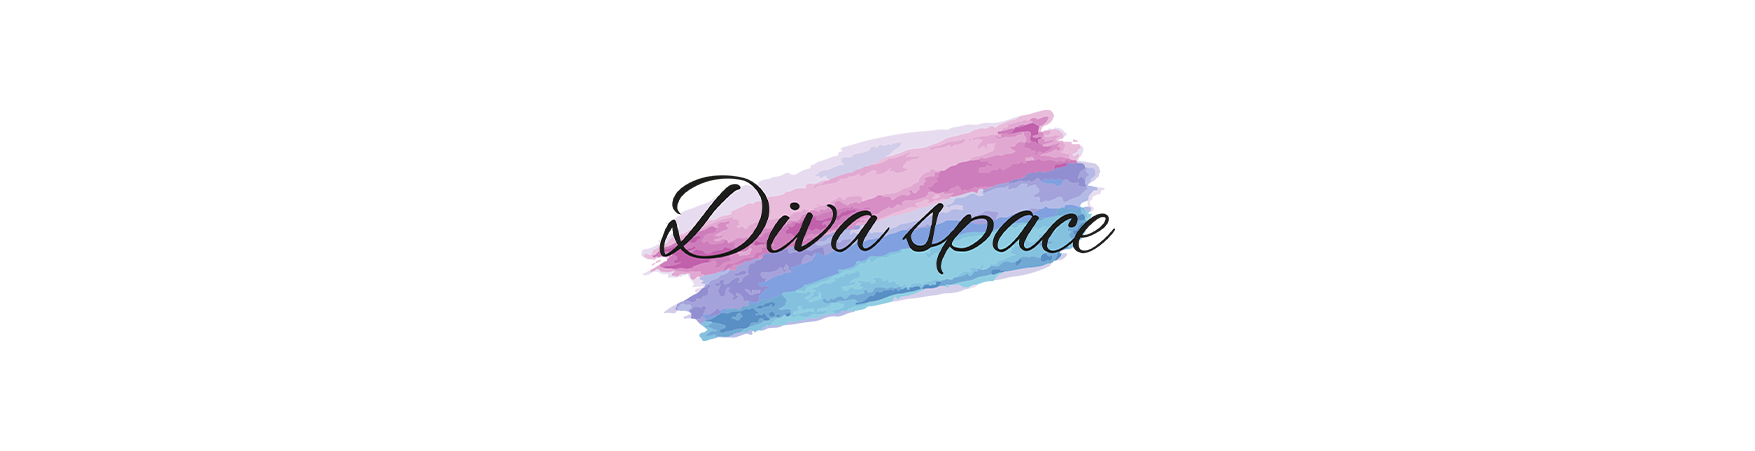 Diva Space